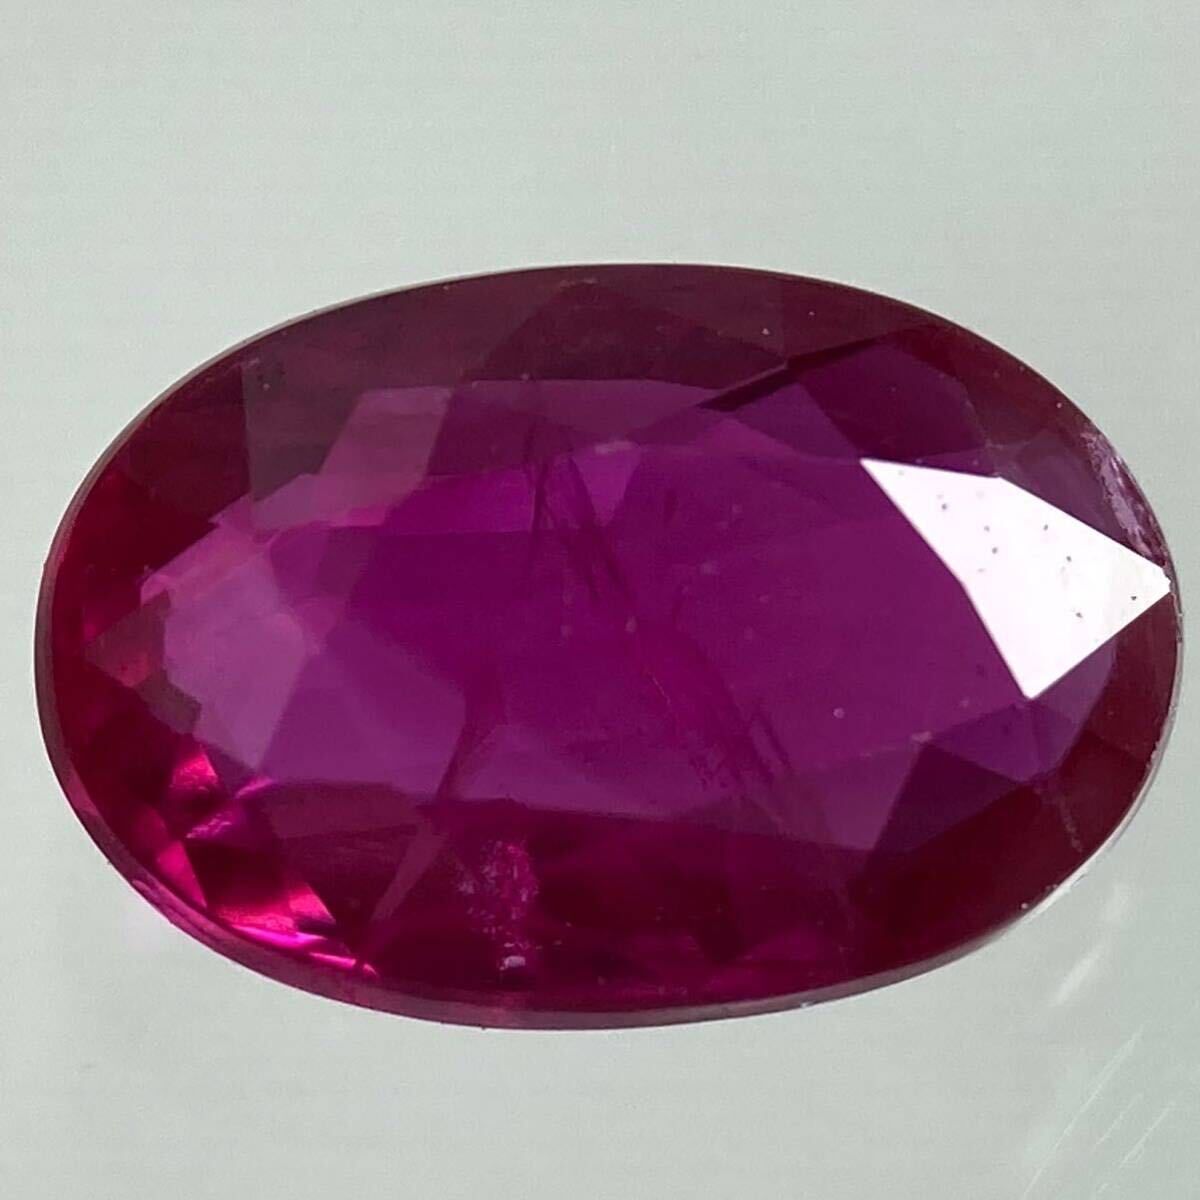 〔 природный   рубин  0.565ct〕a  около 6.09×4.04mm ... ... камень  corundum ... случайный   RUBY  драгоценный камень   ... ...DG0